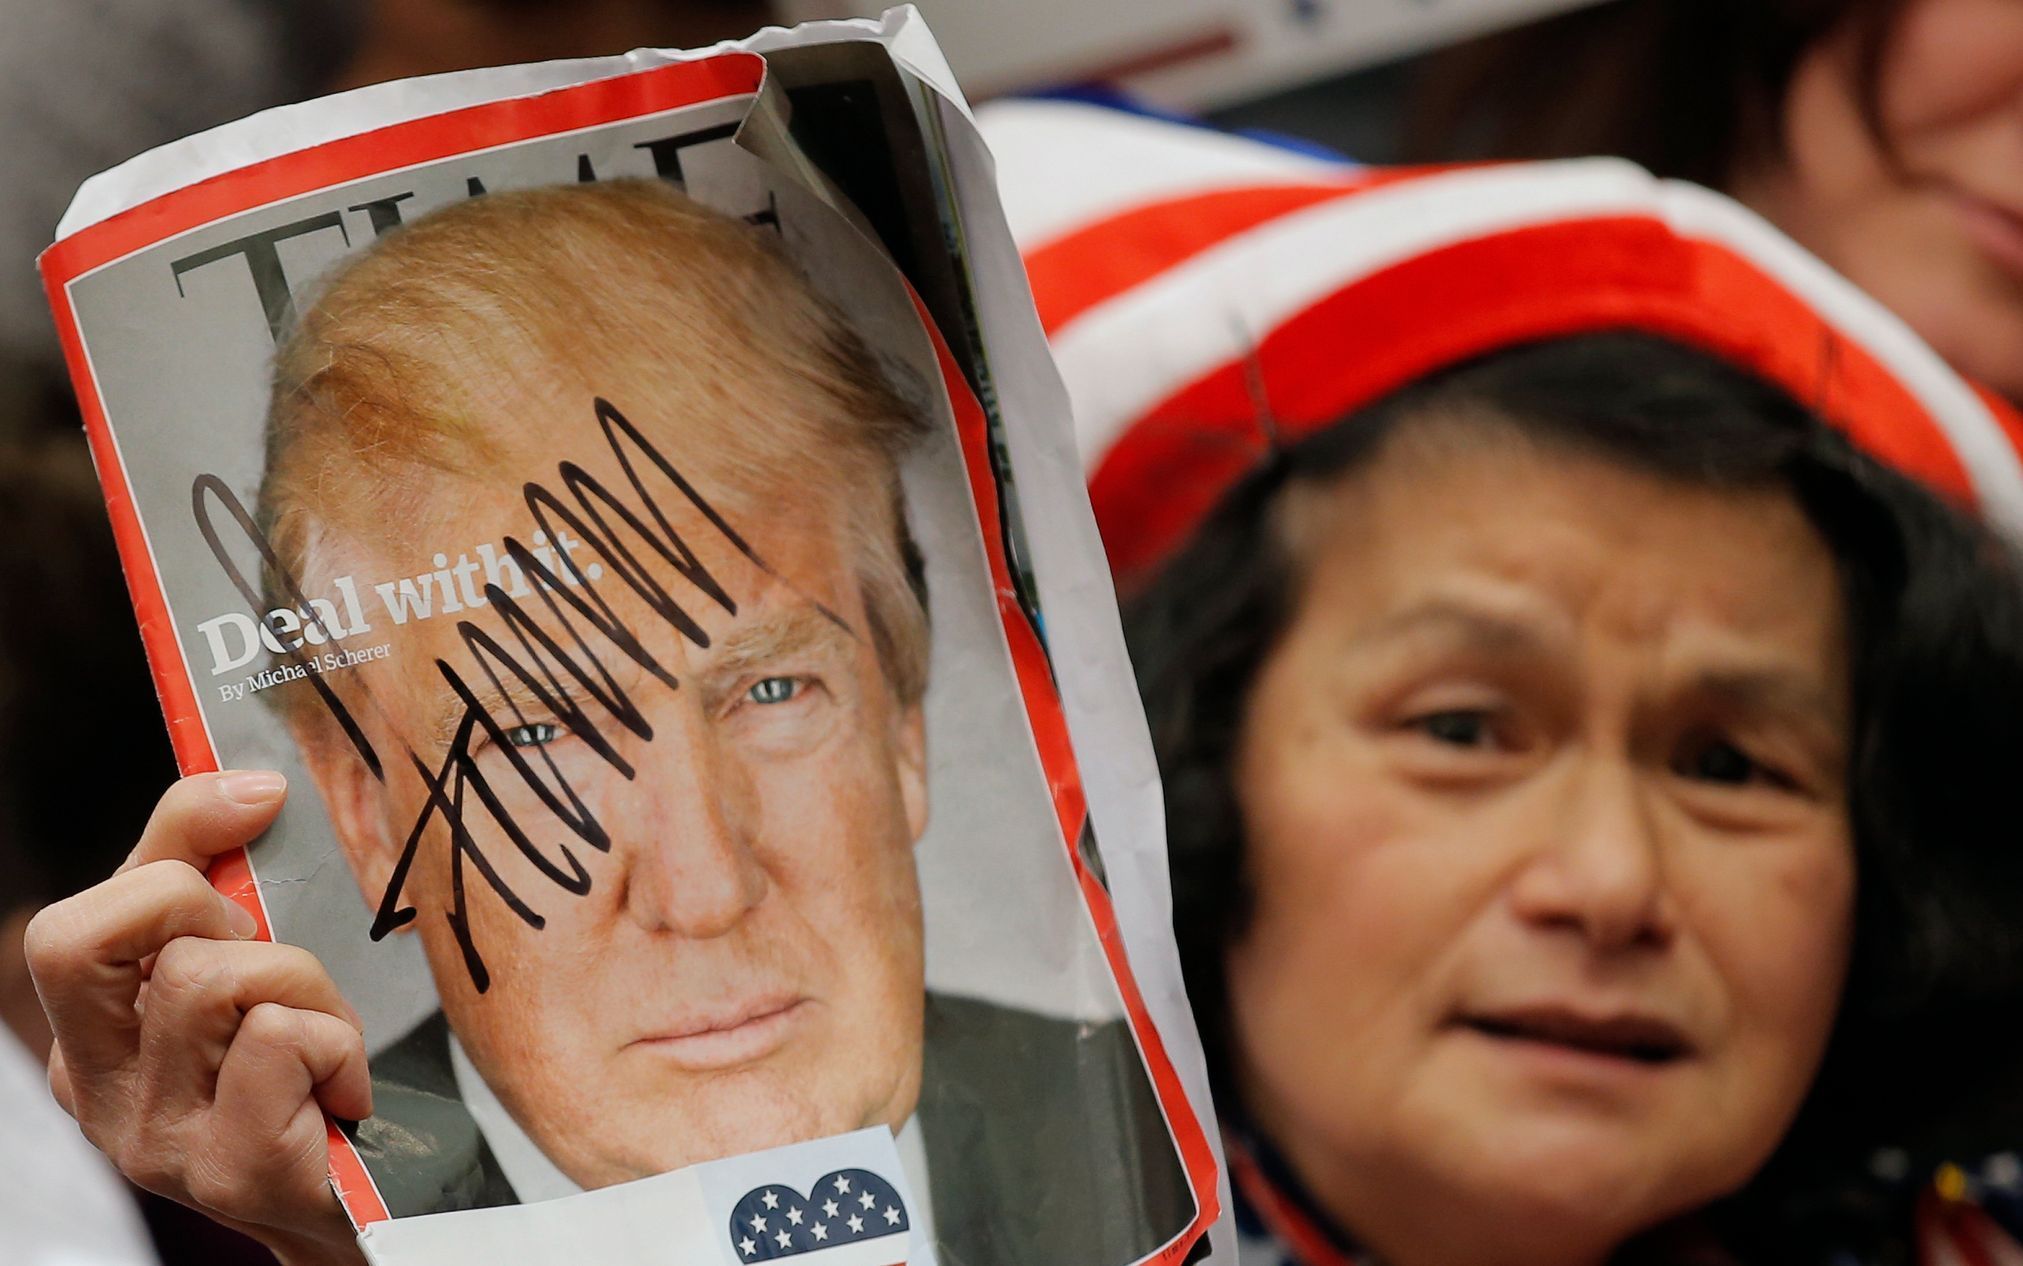 Fanynka Donalda Trumpa se chlubí vydáním časopisu Time, na které se jí realitní magnát před chvíli podepsal